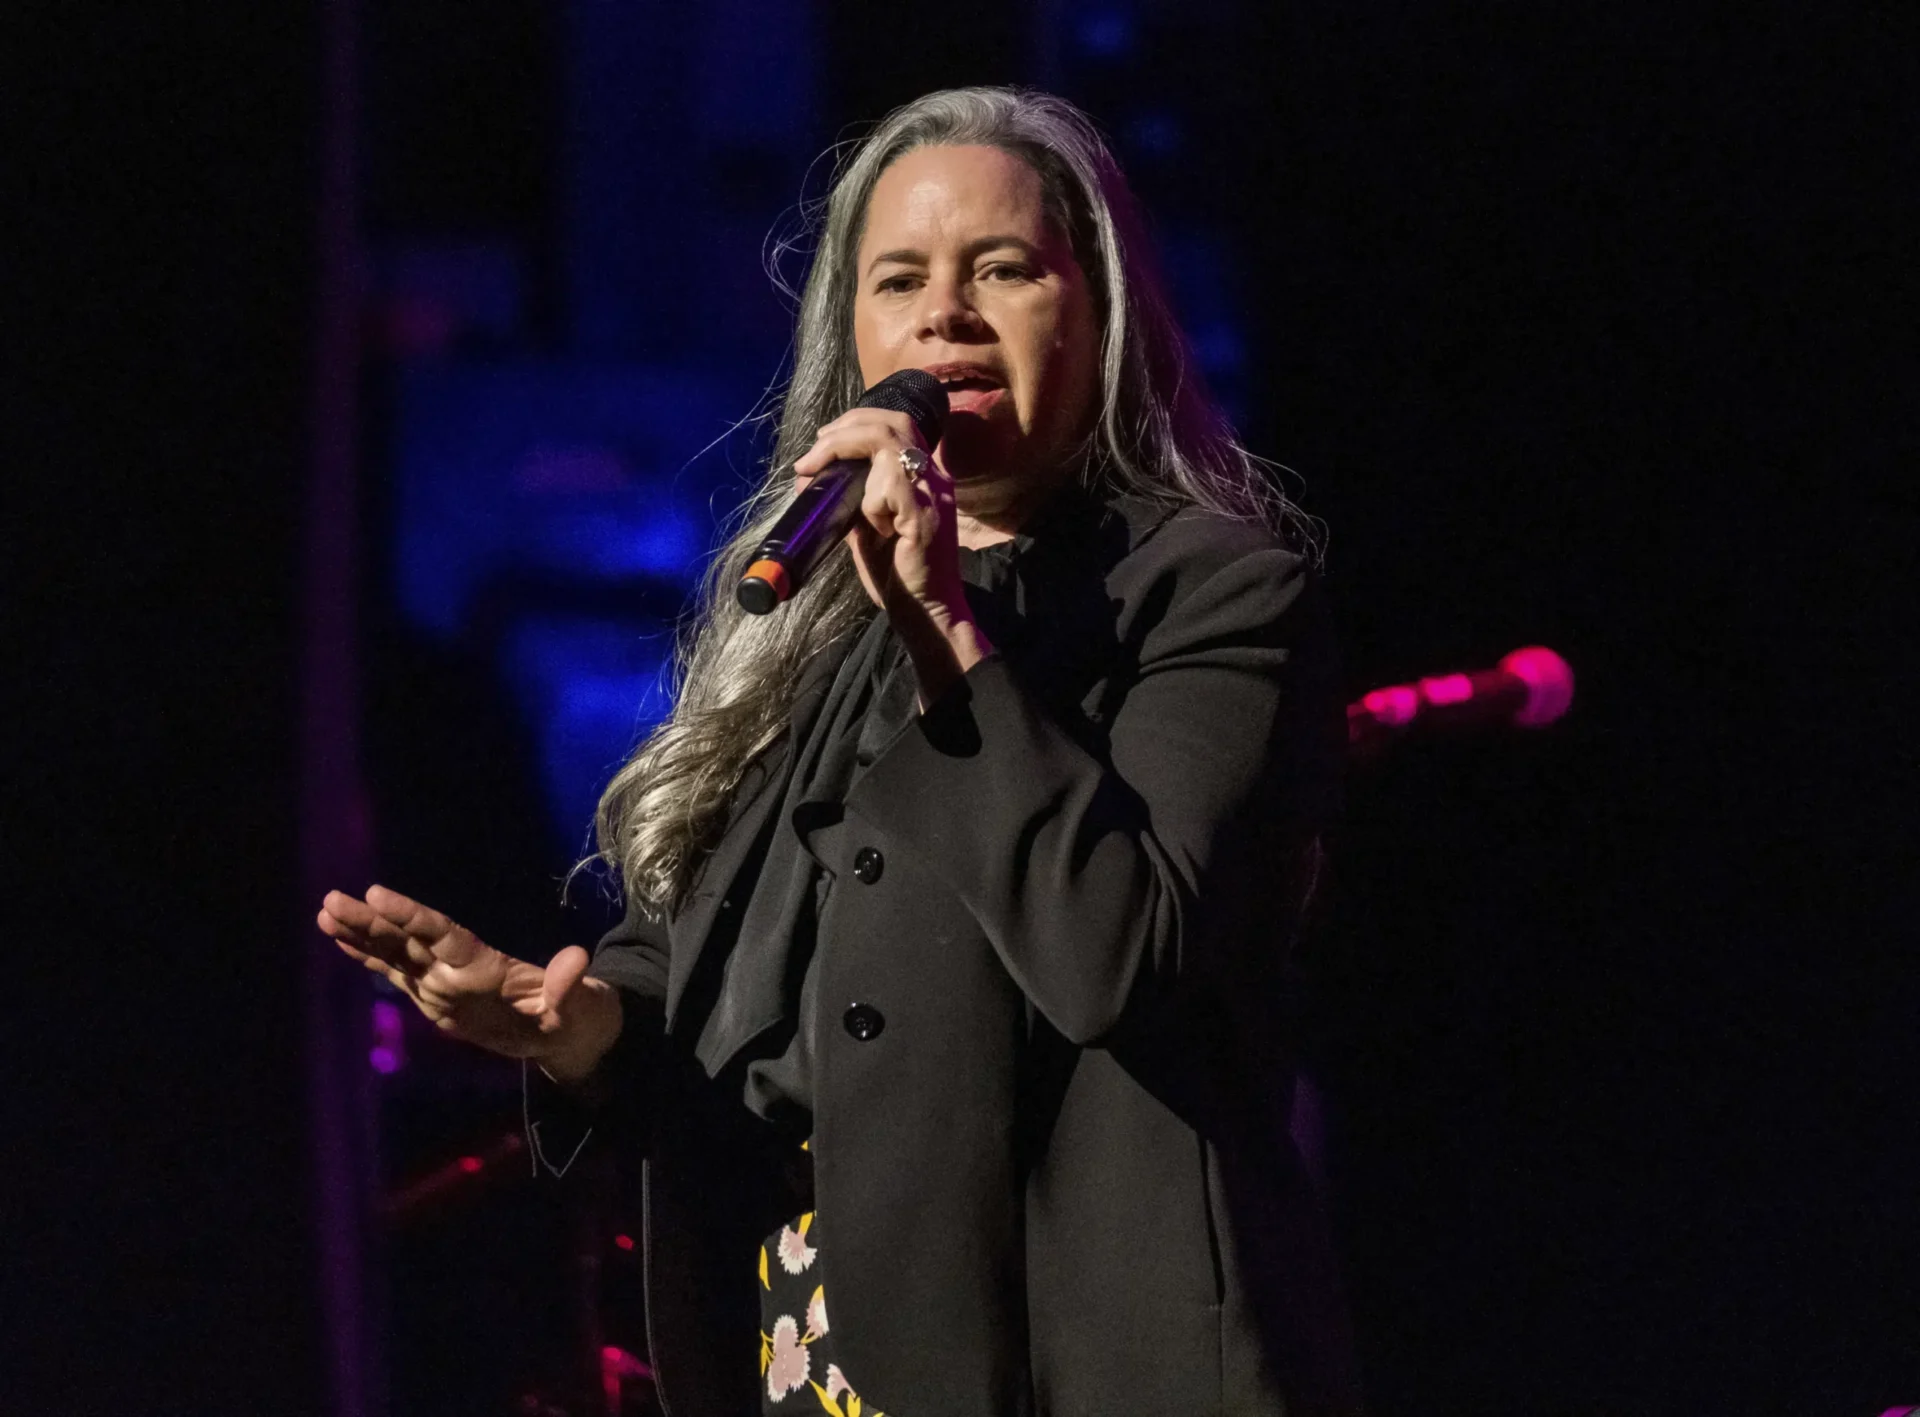 Natalie Merchant emerge de la oscuridad sin nada más que amor